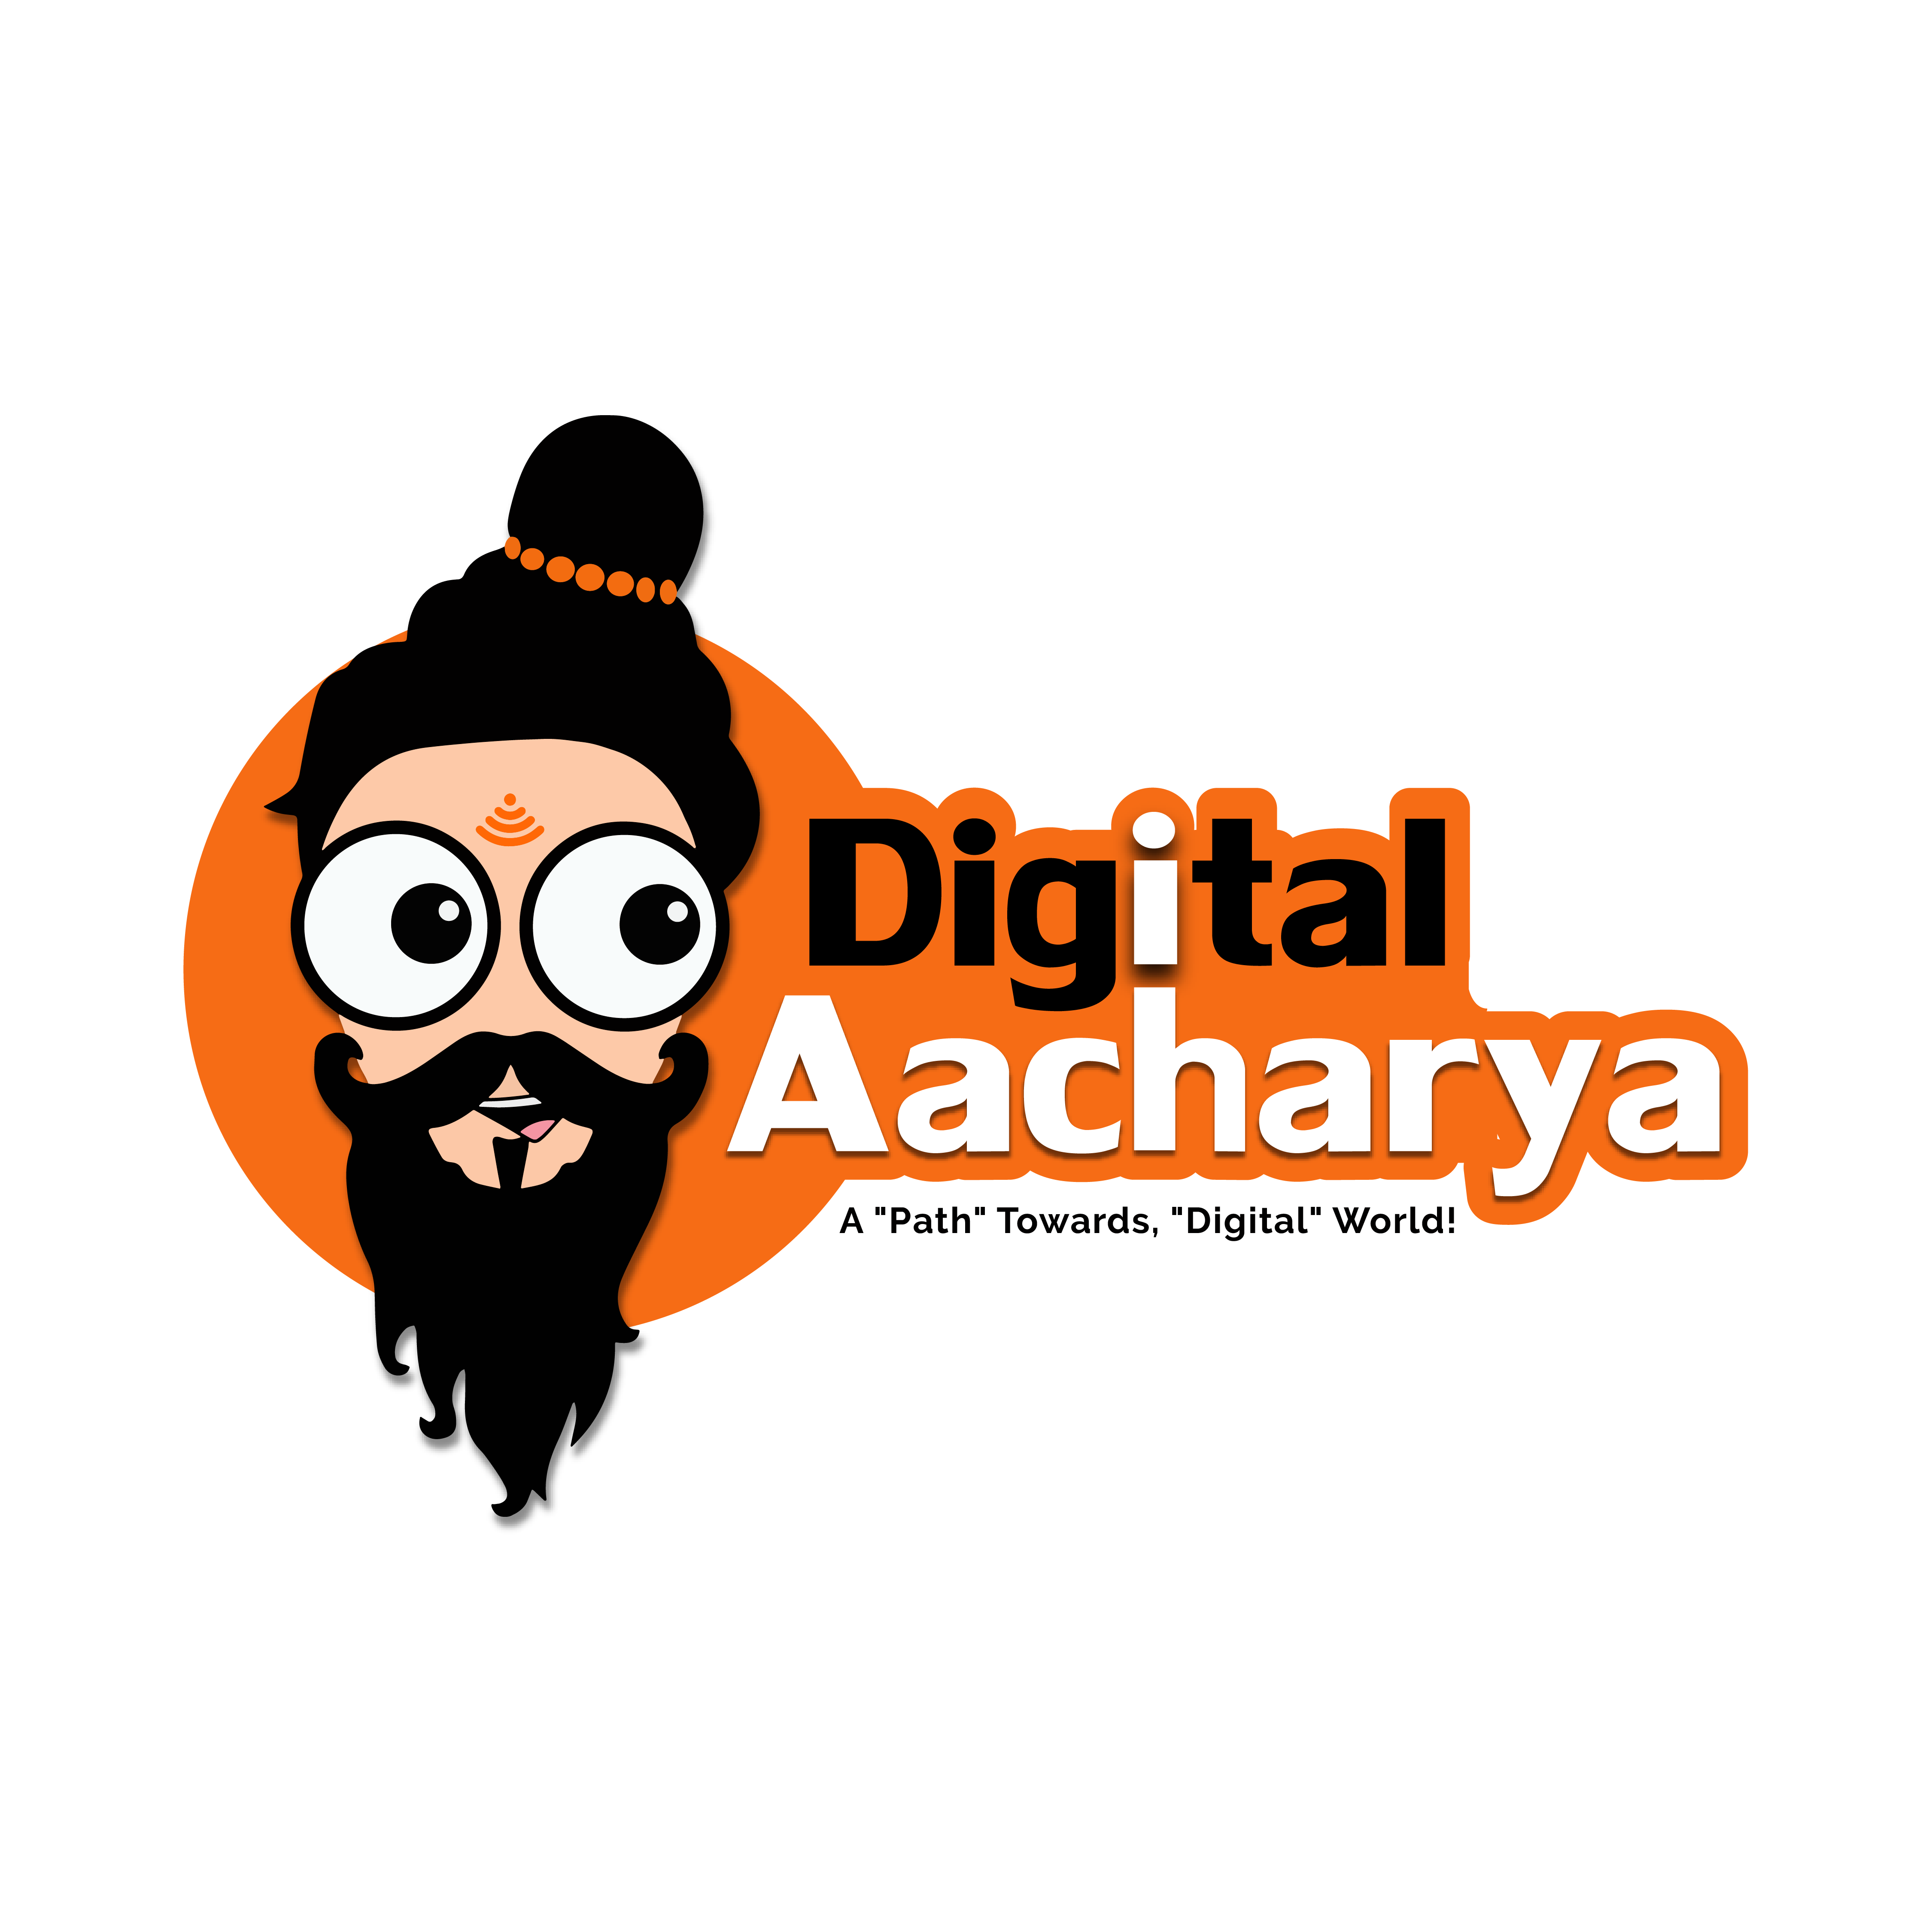 Digital aacharya final logo 01